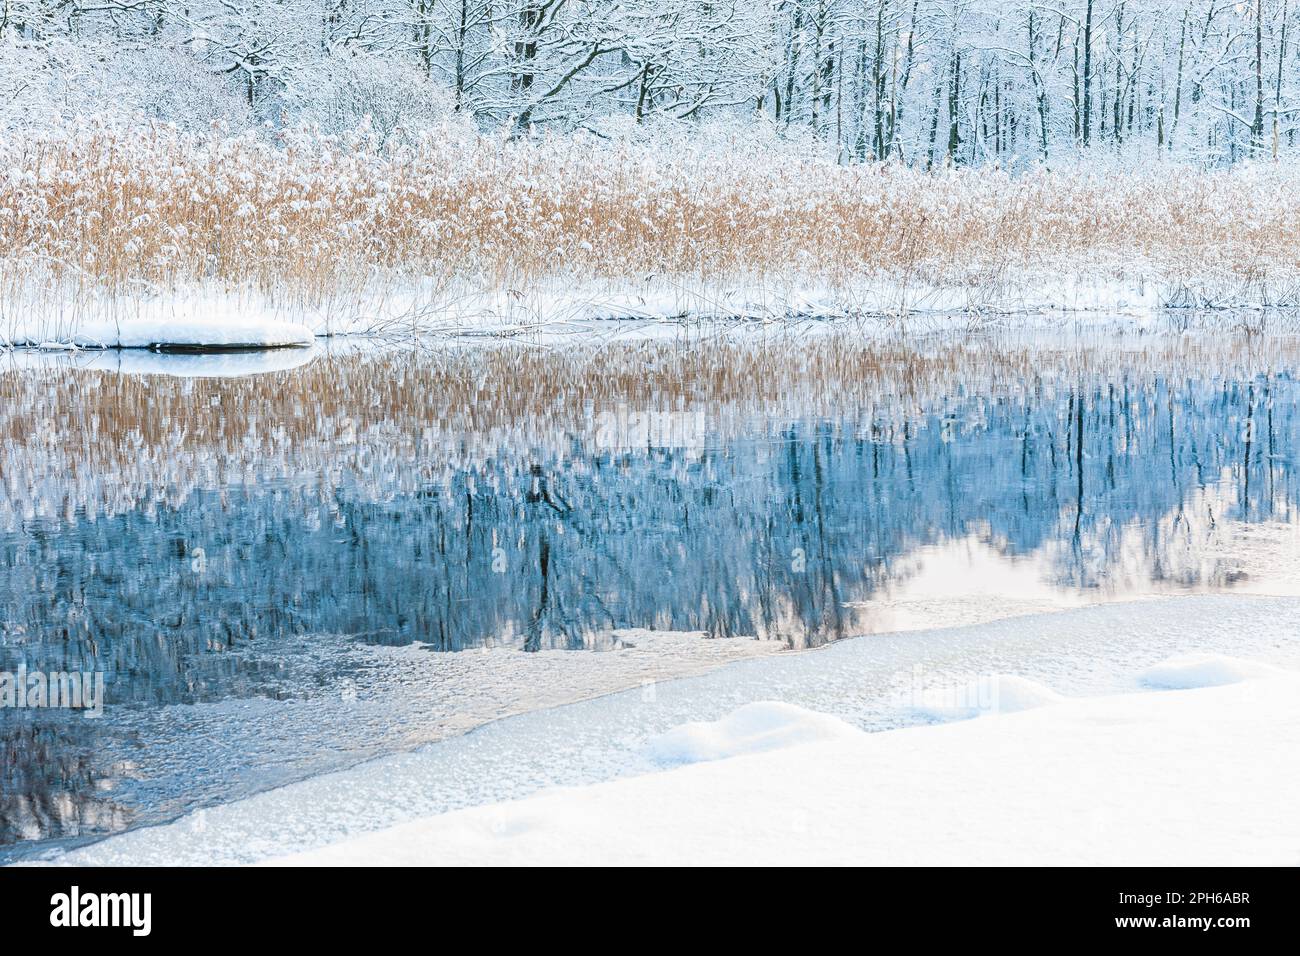 Eine ruhige Winterszene eines schneebedeckten Flusses, der das frostige Schilf in ruhiger Stille widerspiegelt. Stockfoto